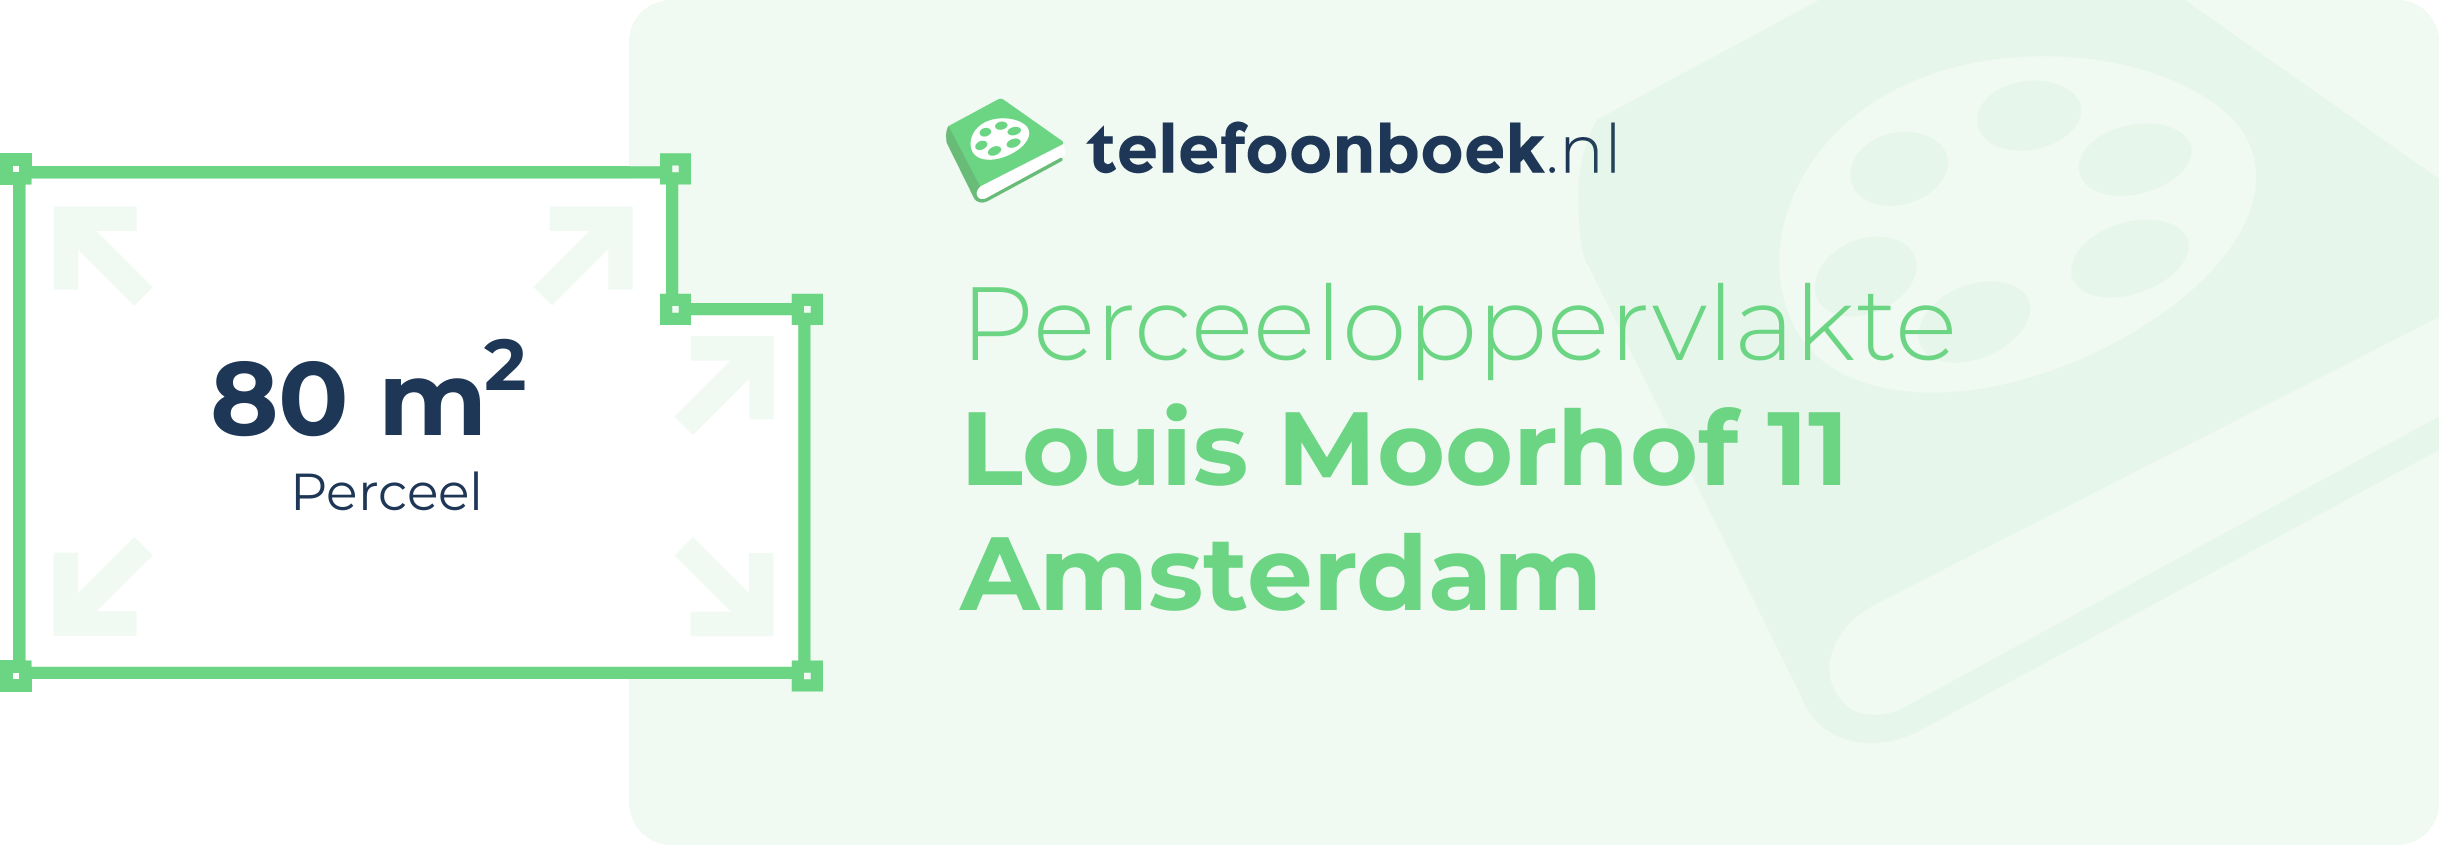 Perceeloppervlakte Louis Moorhof 11 Amsterdam